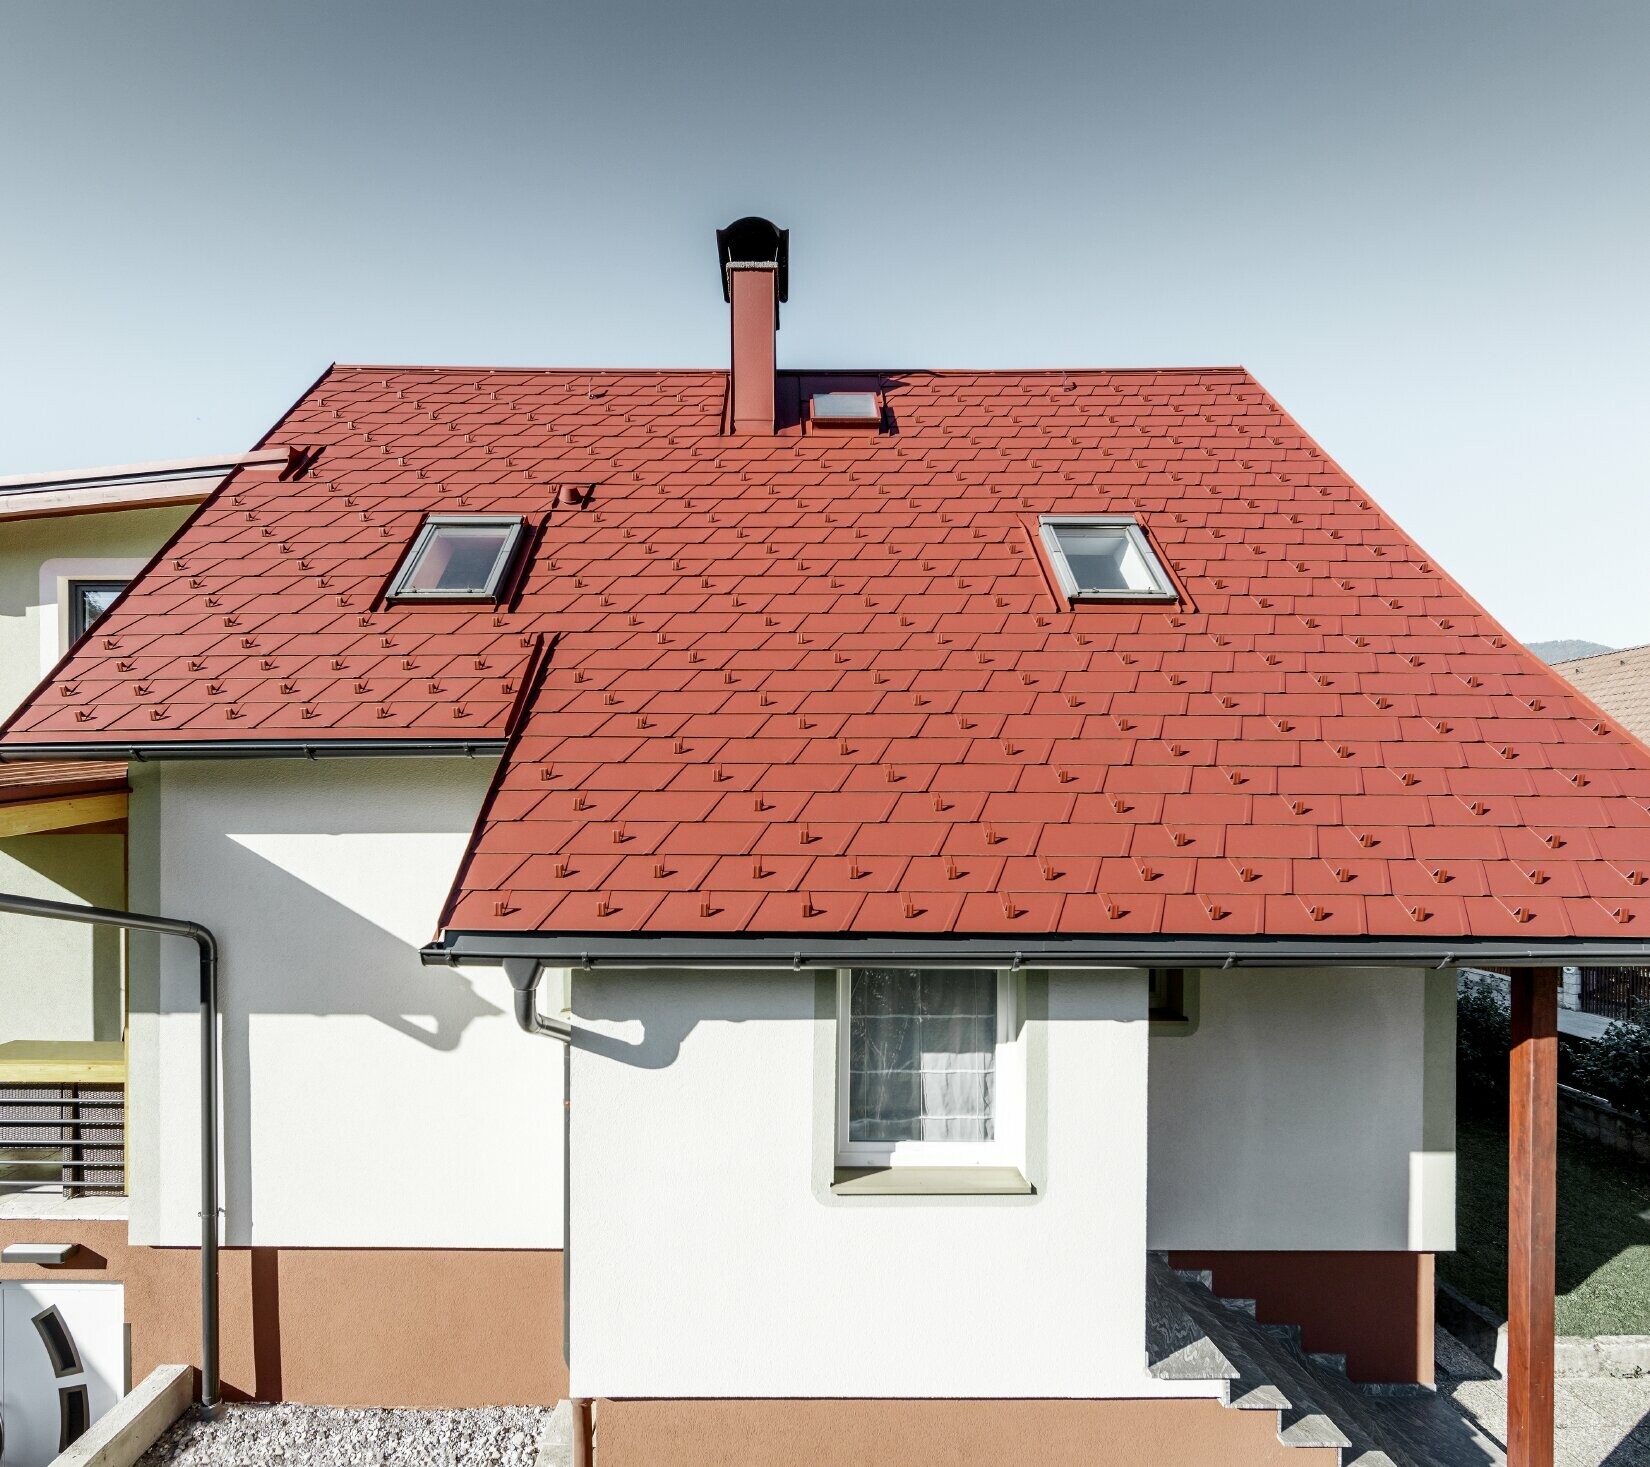 Renoverat enfamiljshus med nytt tak från PREFA med takshingel  DS.19 i färgen oxidröd.